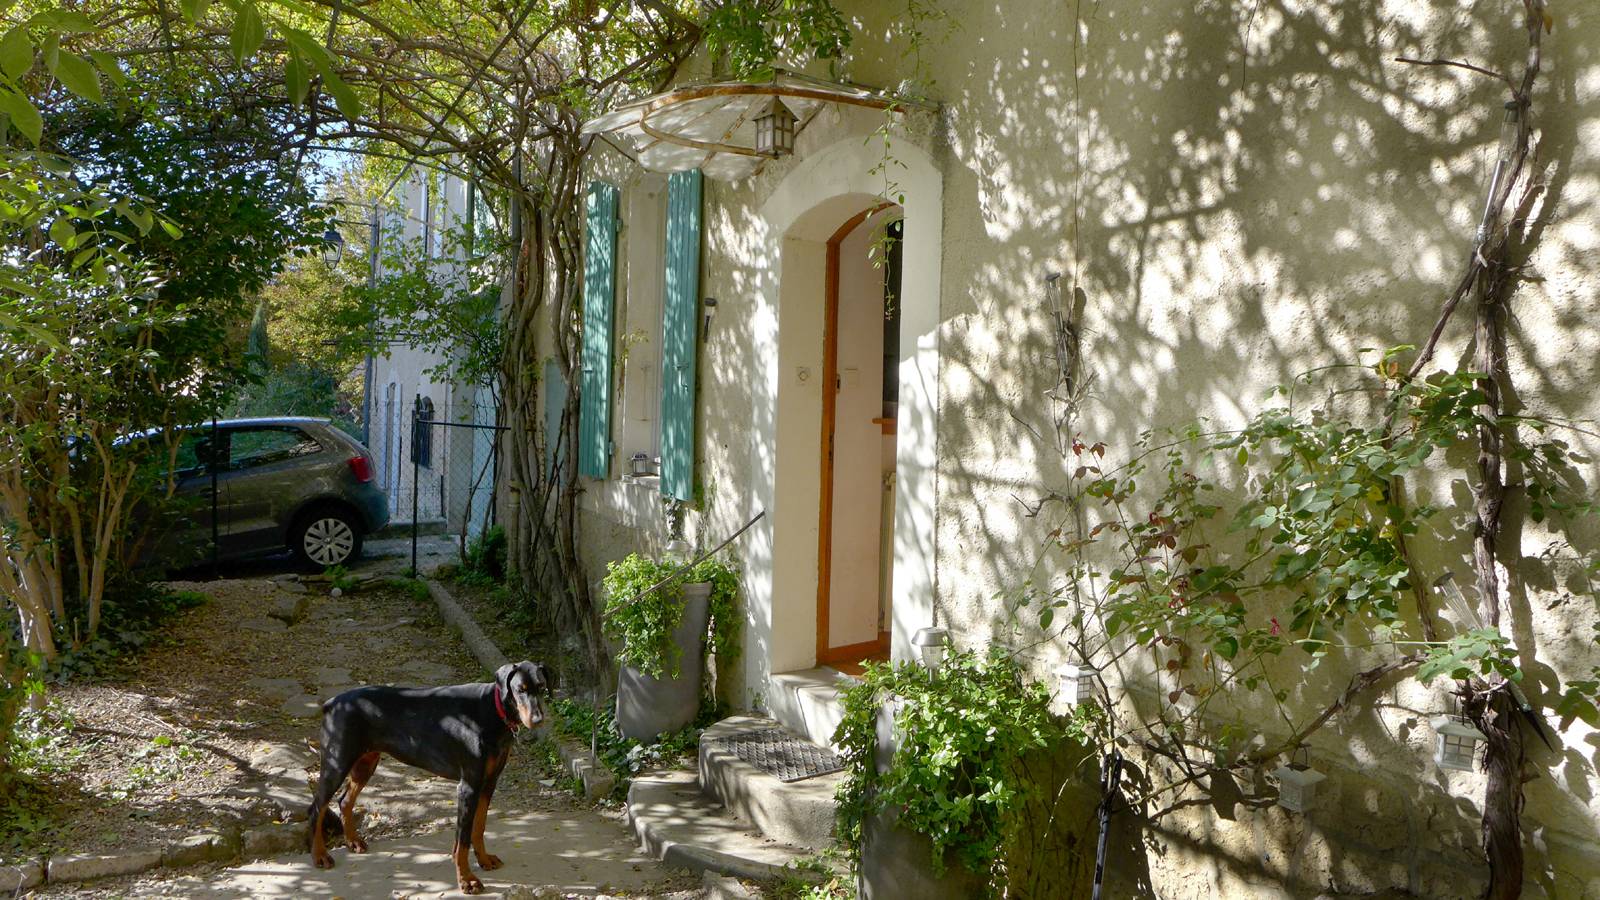 A vendre, Maison de village Drôme Provençale garage, cour et terrasse A vendre, Maison de village Drôme Provençale Saint Paul 3 Châteaux garage, cour et terrasse